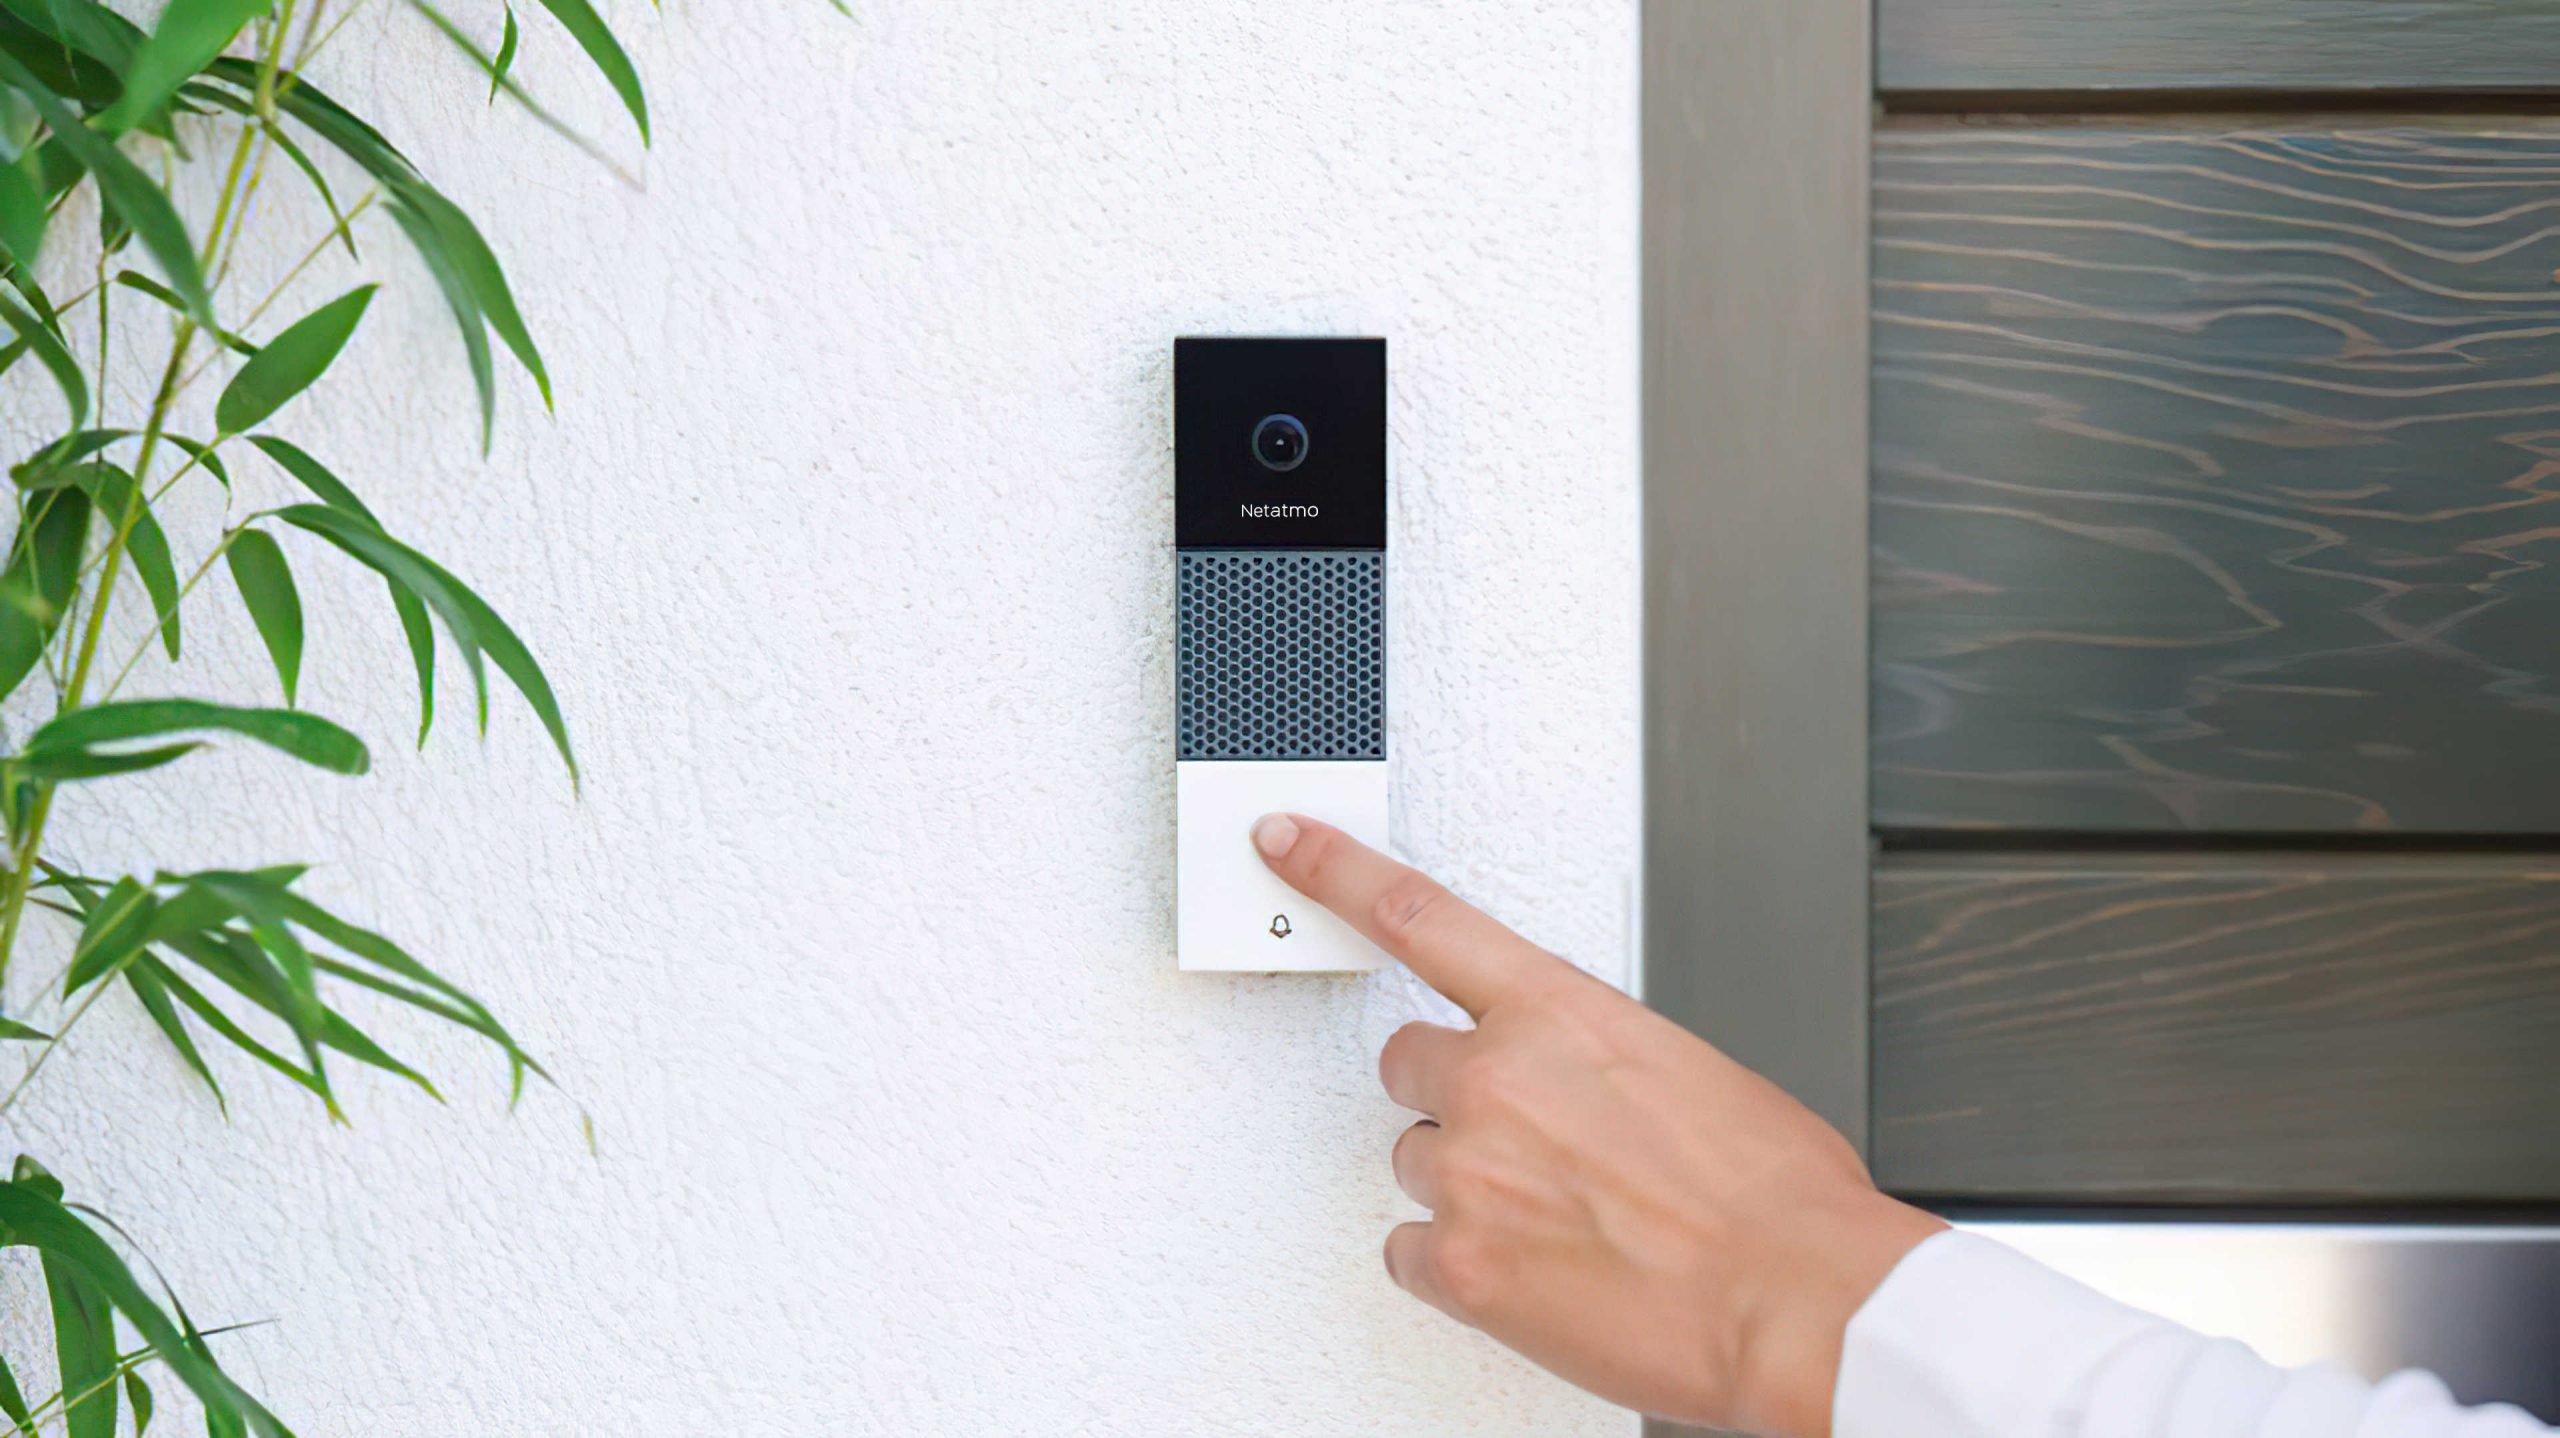 Netatmo smart doorbell